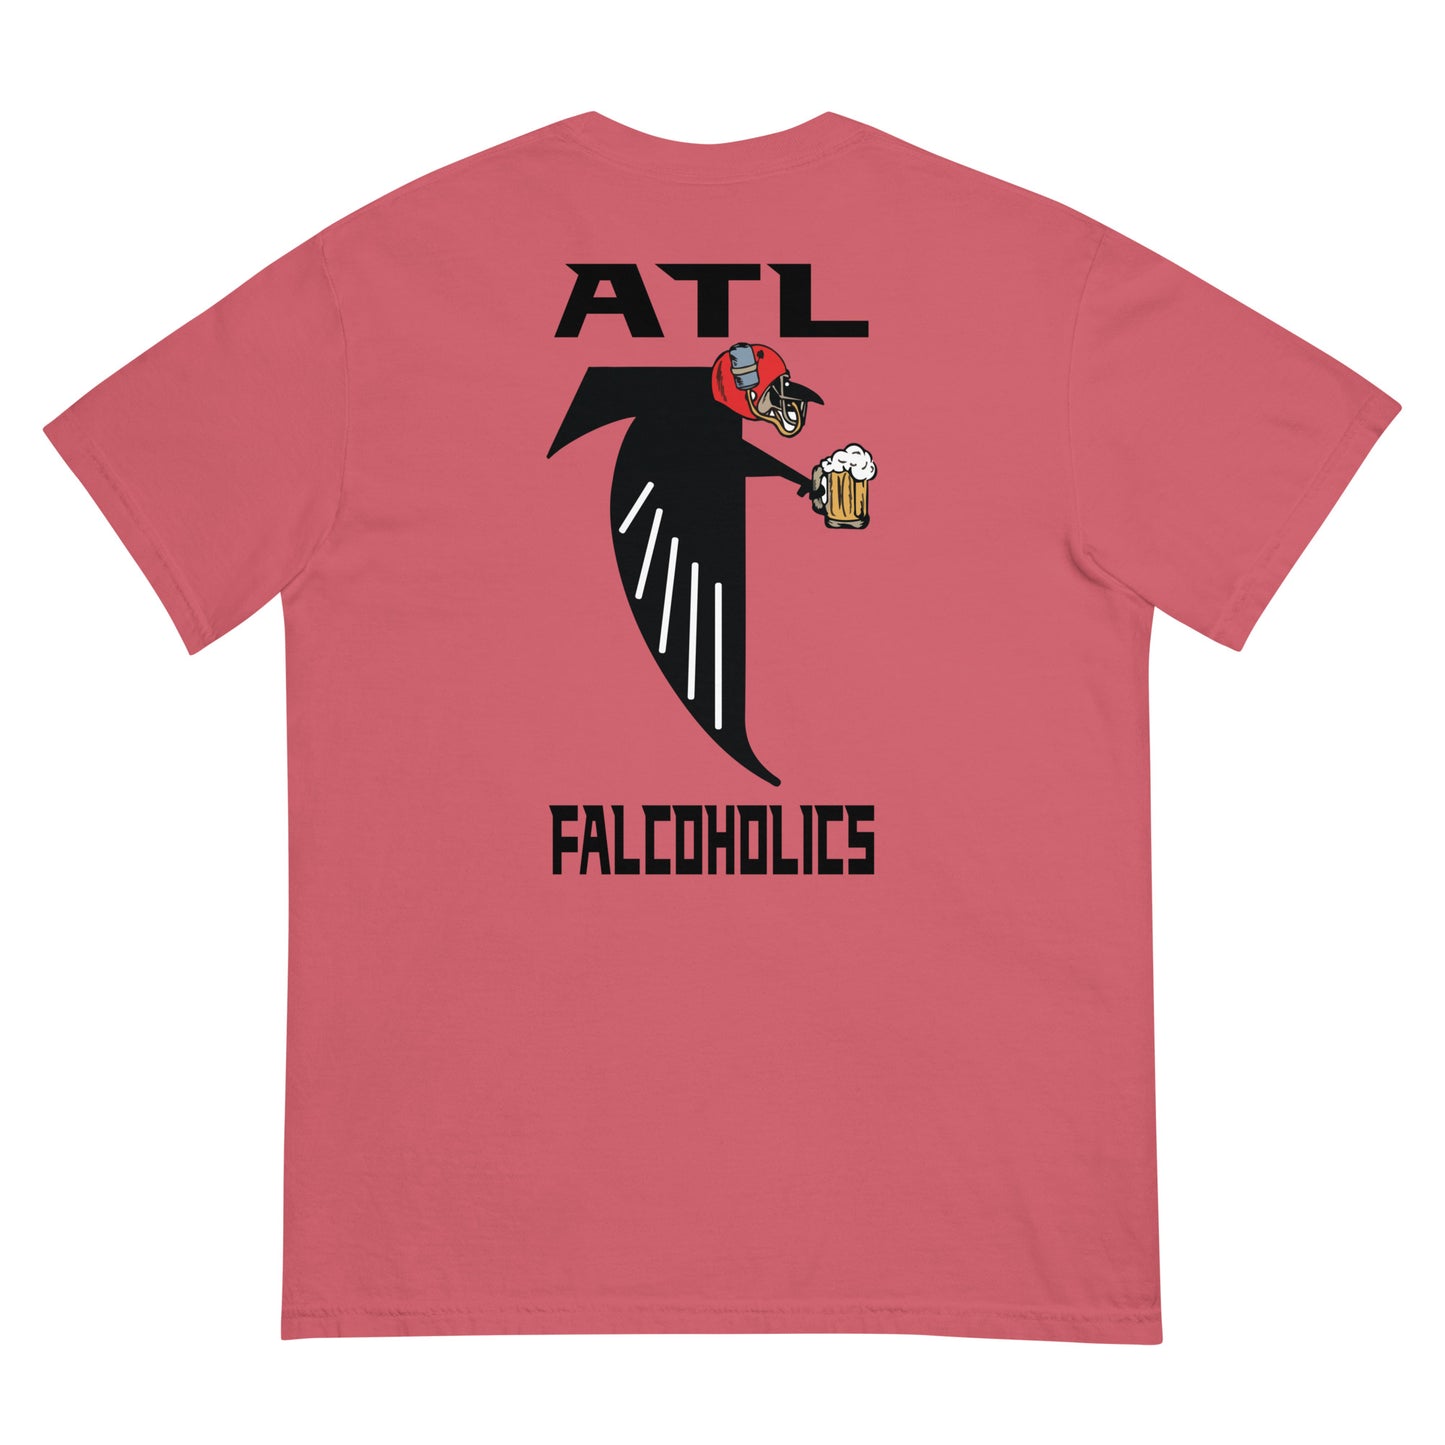 ATL Falcoholics